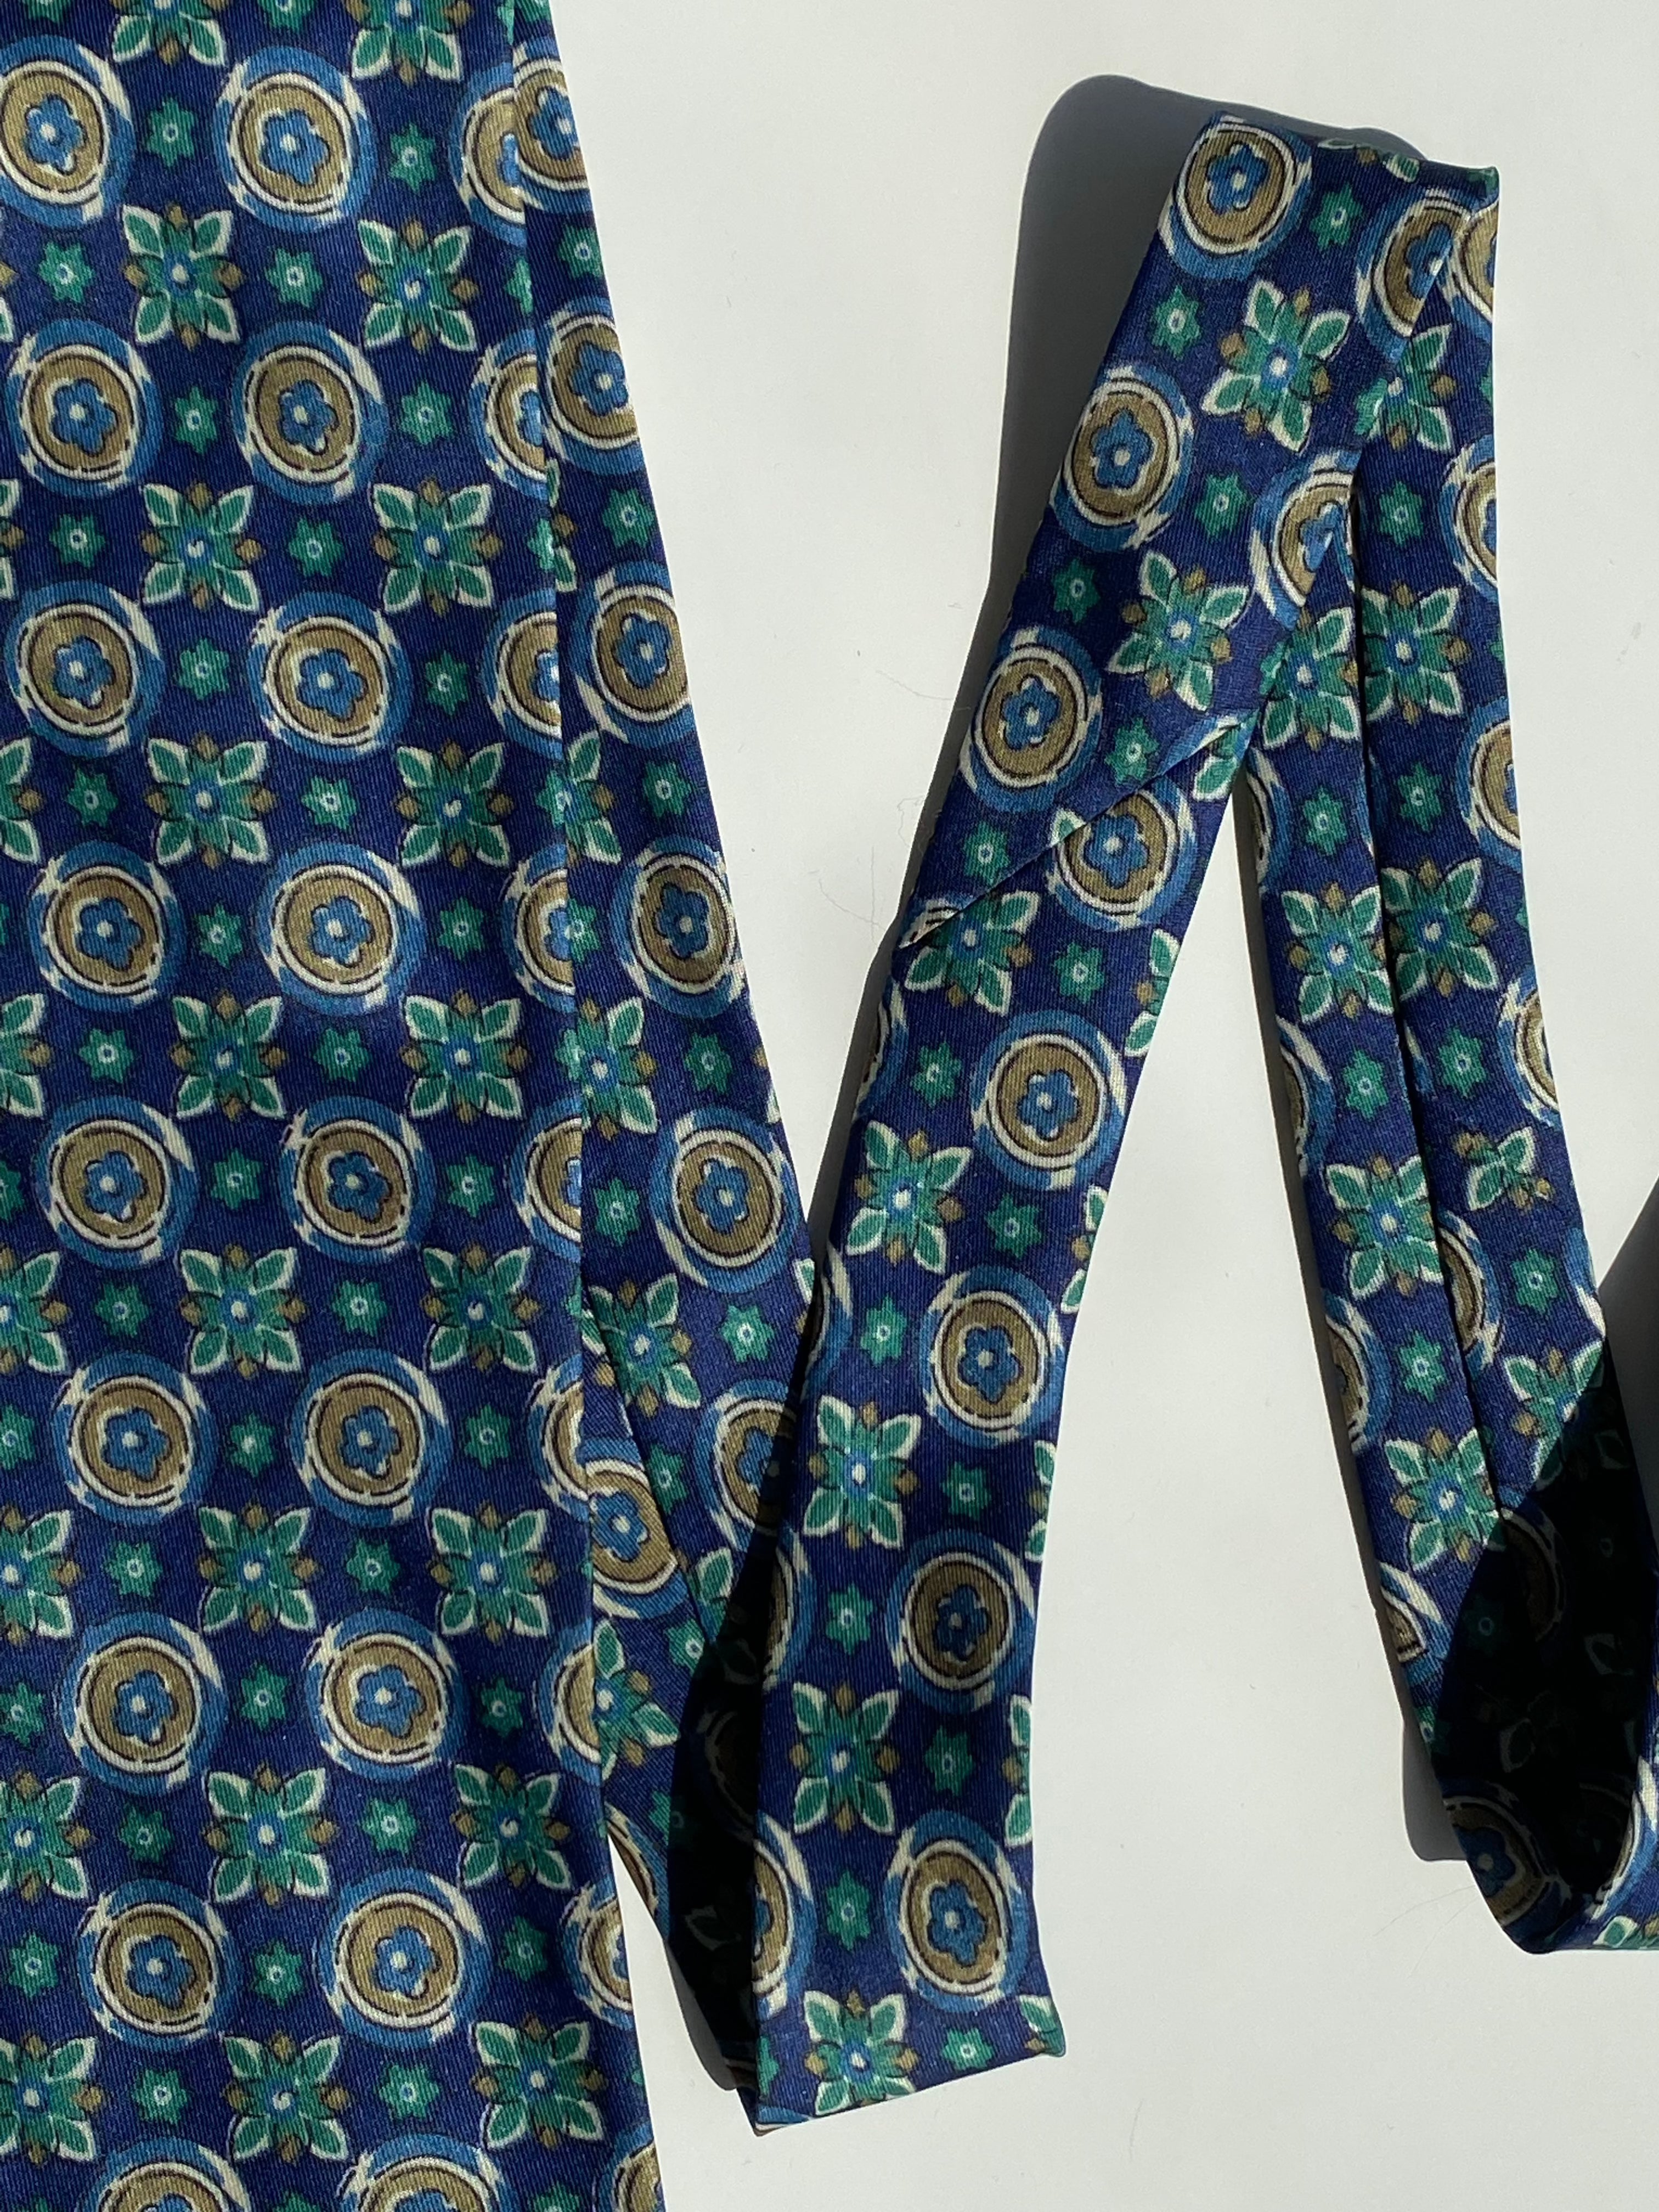 Vintage Paolo Comero Tie - Balagan Vintage Ties 00s, 80s, 90s, print, printed tie, prints, tie, ties